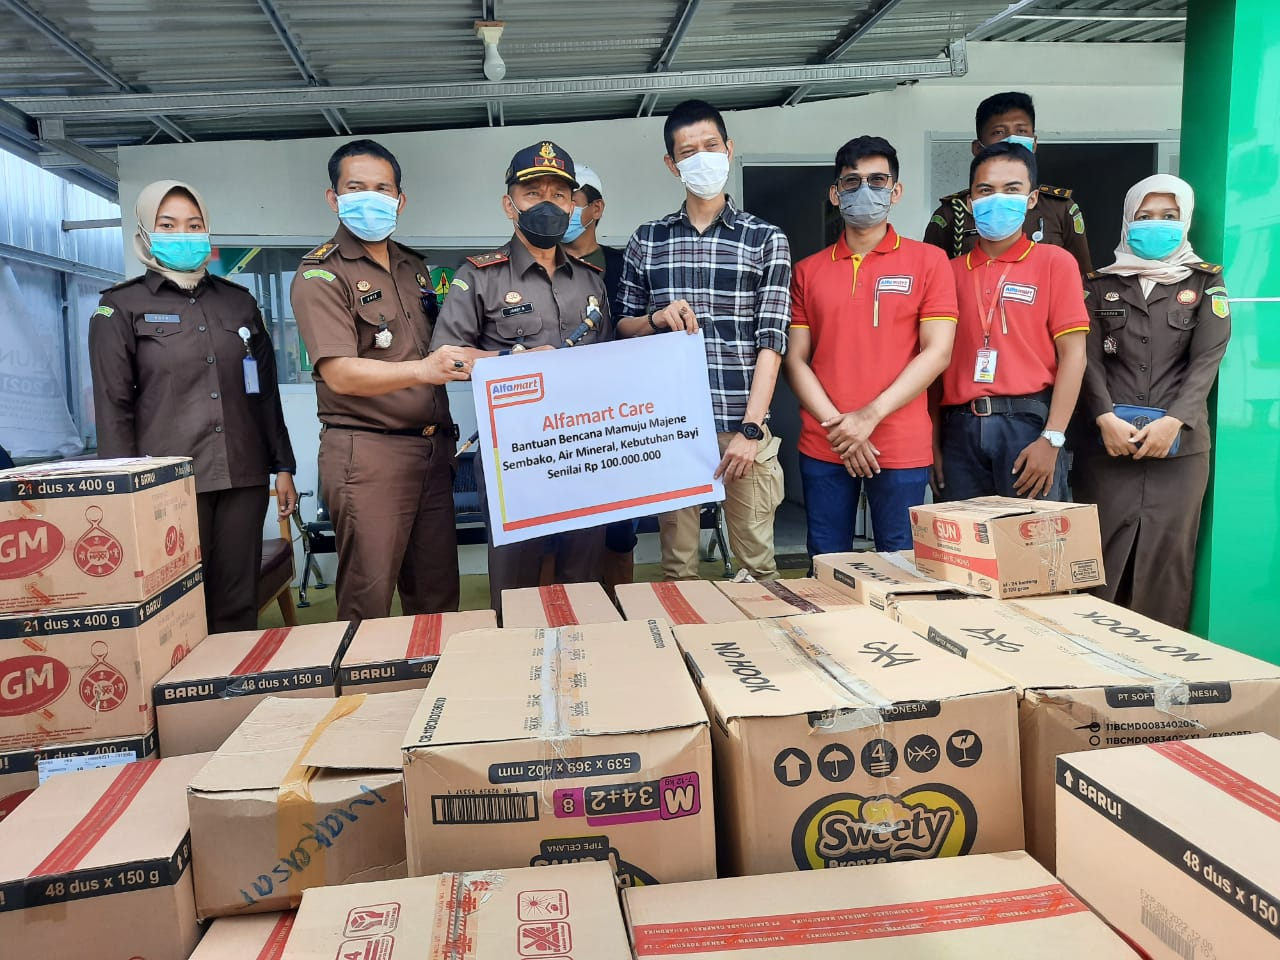 News Banner Peduli Sesama, Alfamart Serahkan Bantuan Korban Gempa Mamuju Majene Sulawesi Barat